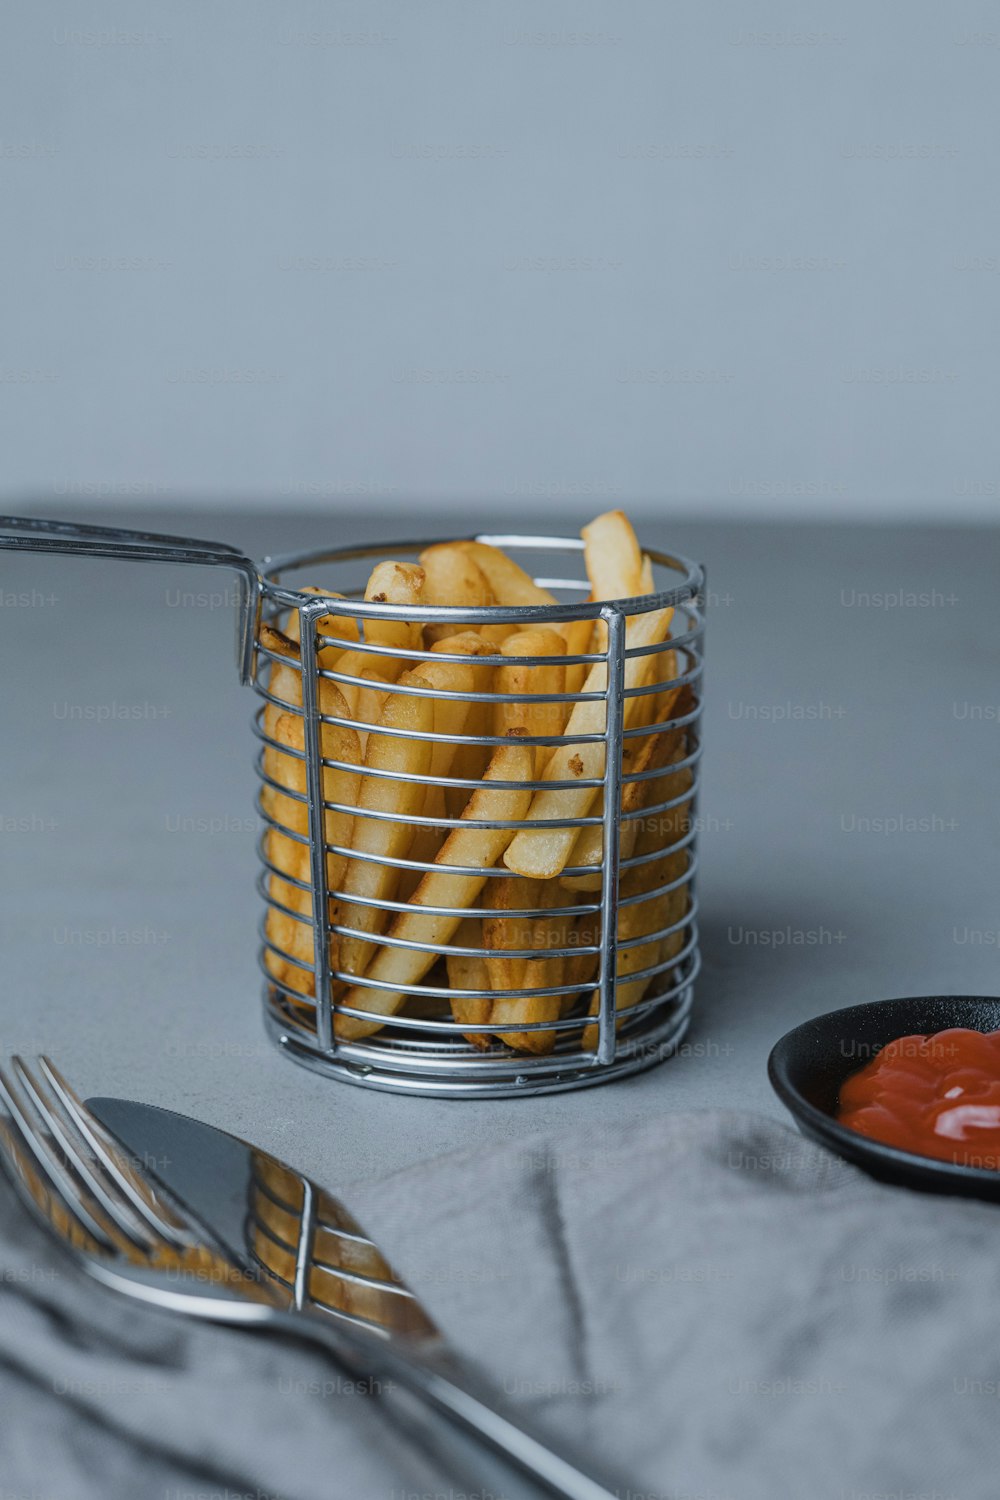 Una canasta de papas fritas con ketchup y un tenedor